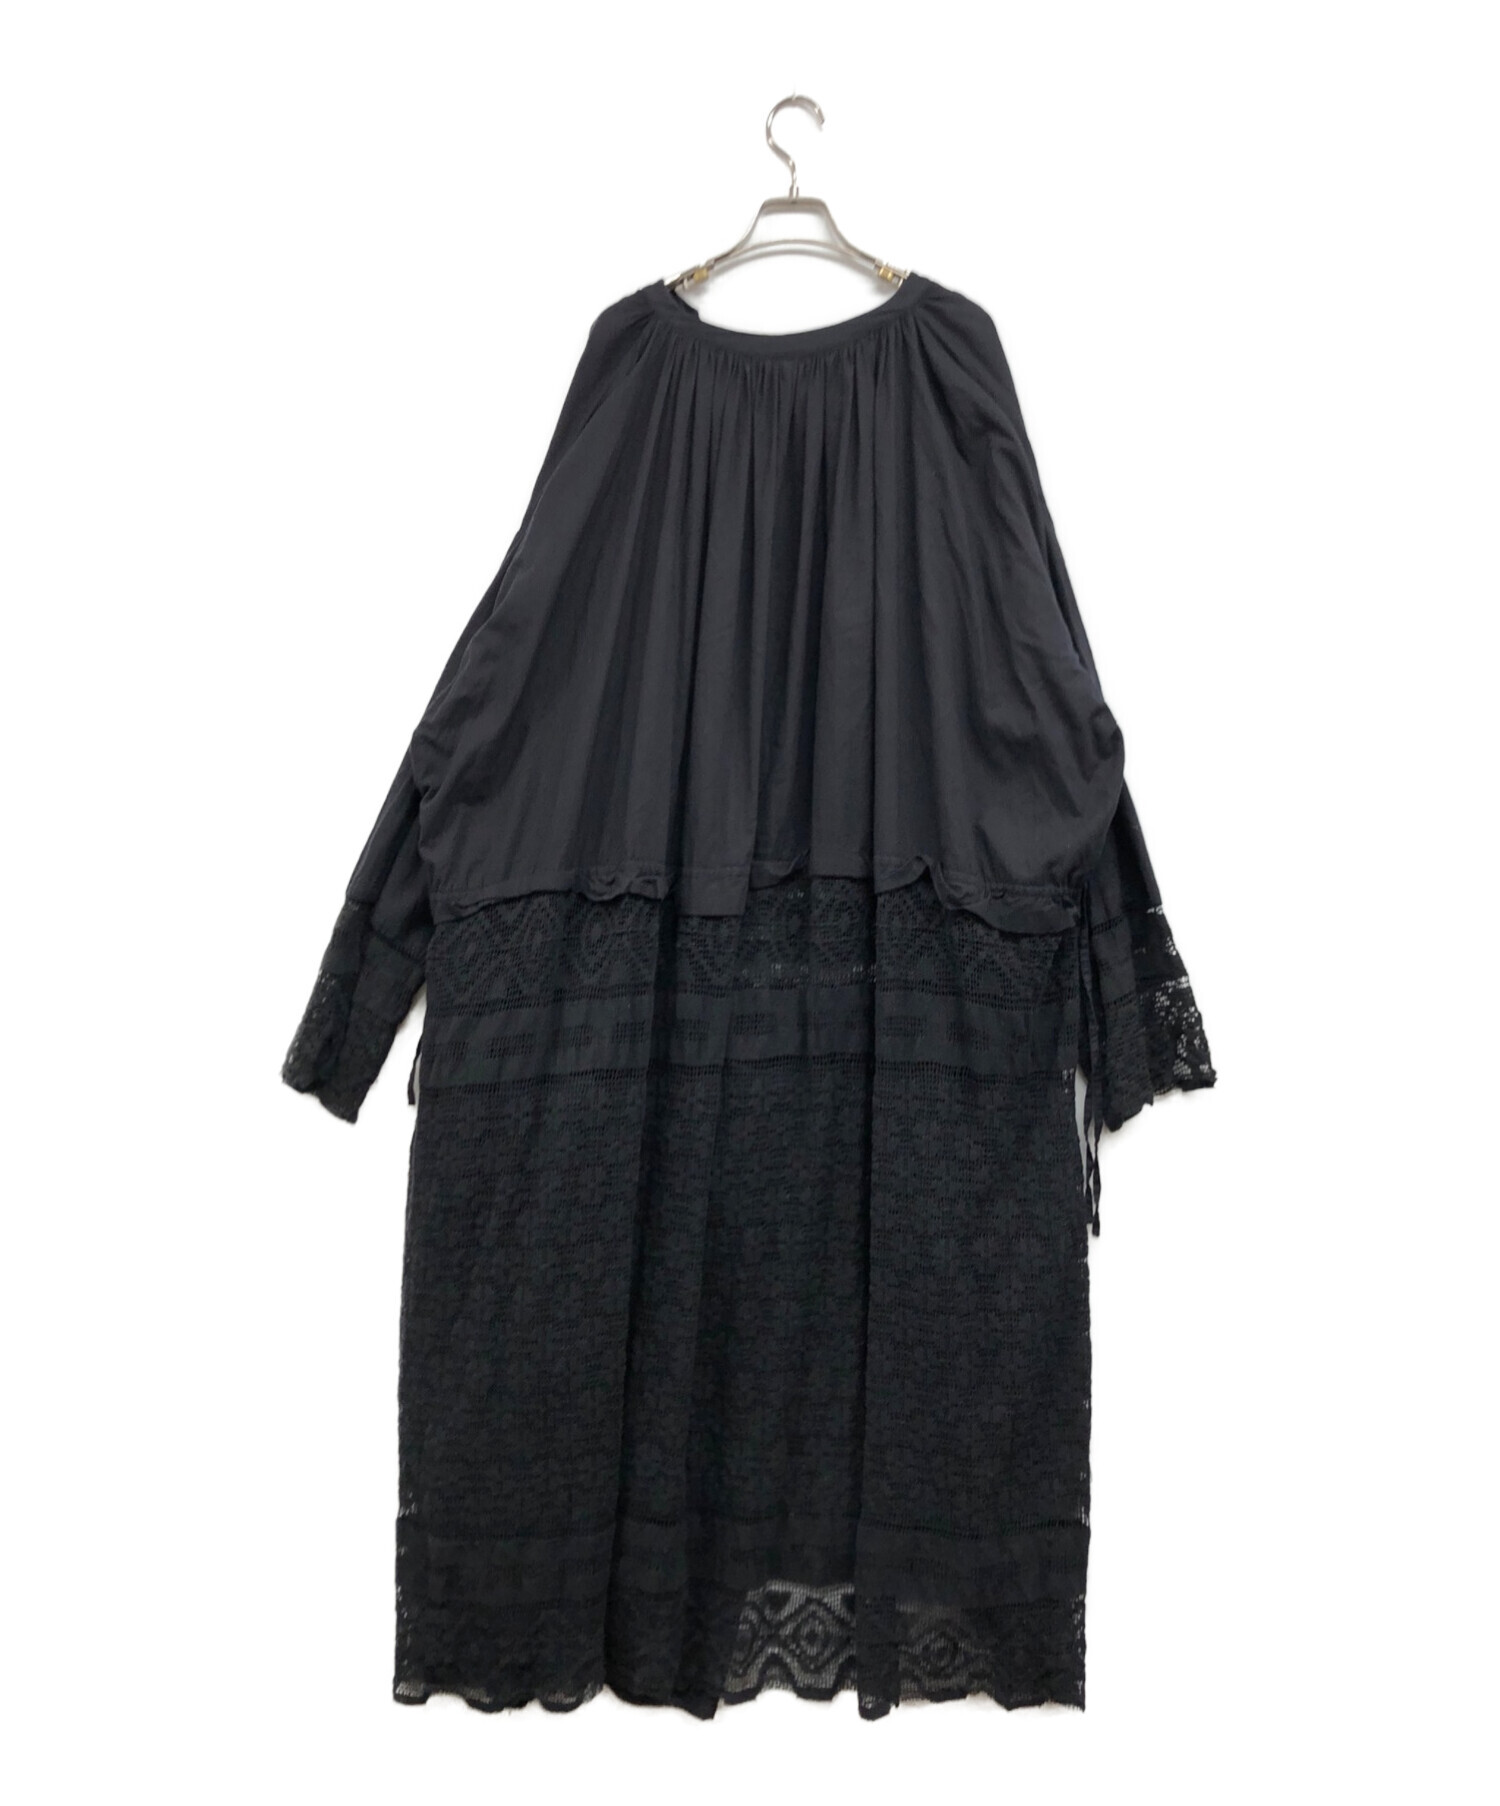 TODAYFUL (トゥデイフル) Church Lace Dress ブラック サイズ:Ⅿ